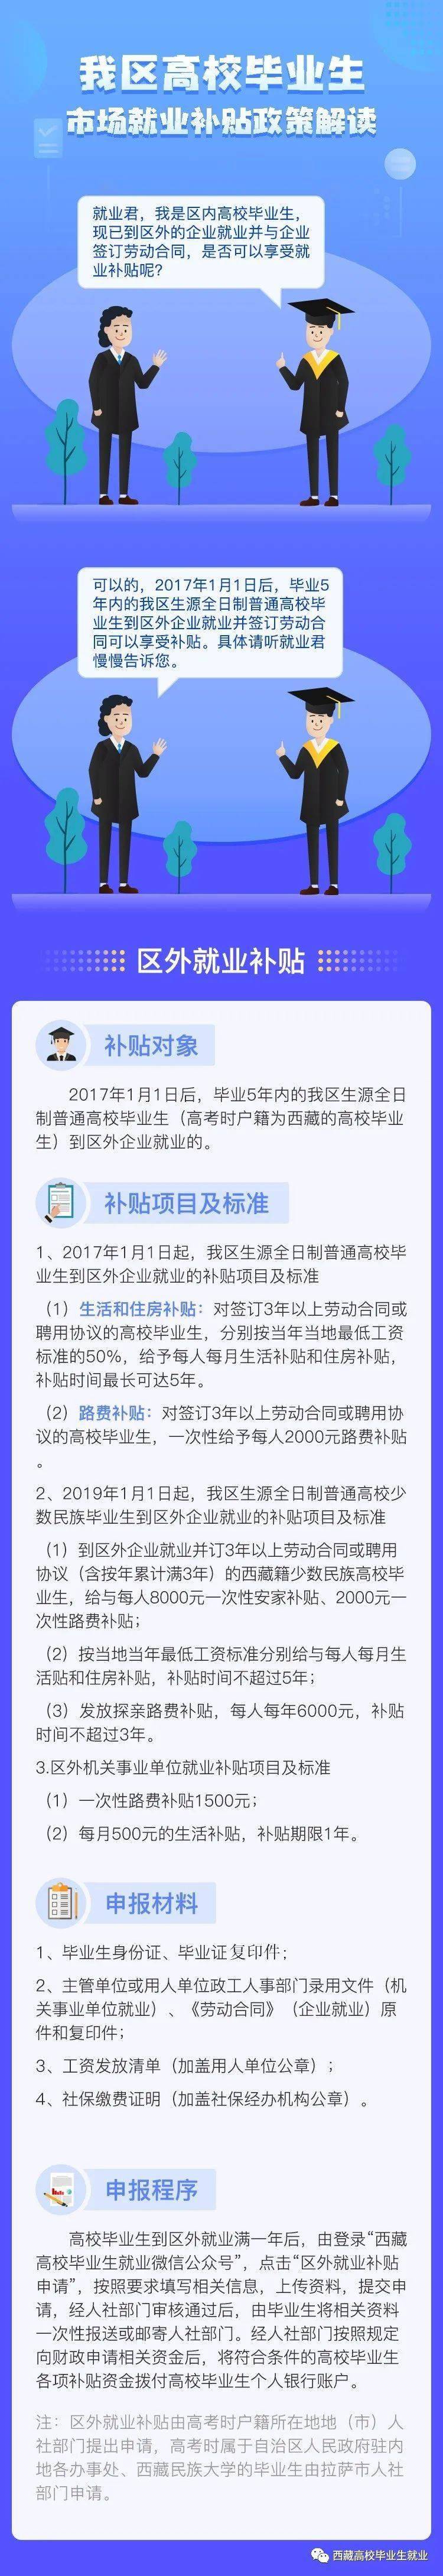 湖南创业政策_大学生创业无息贷款政策_创业 政策